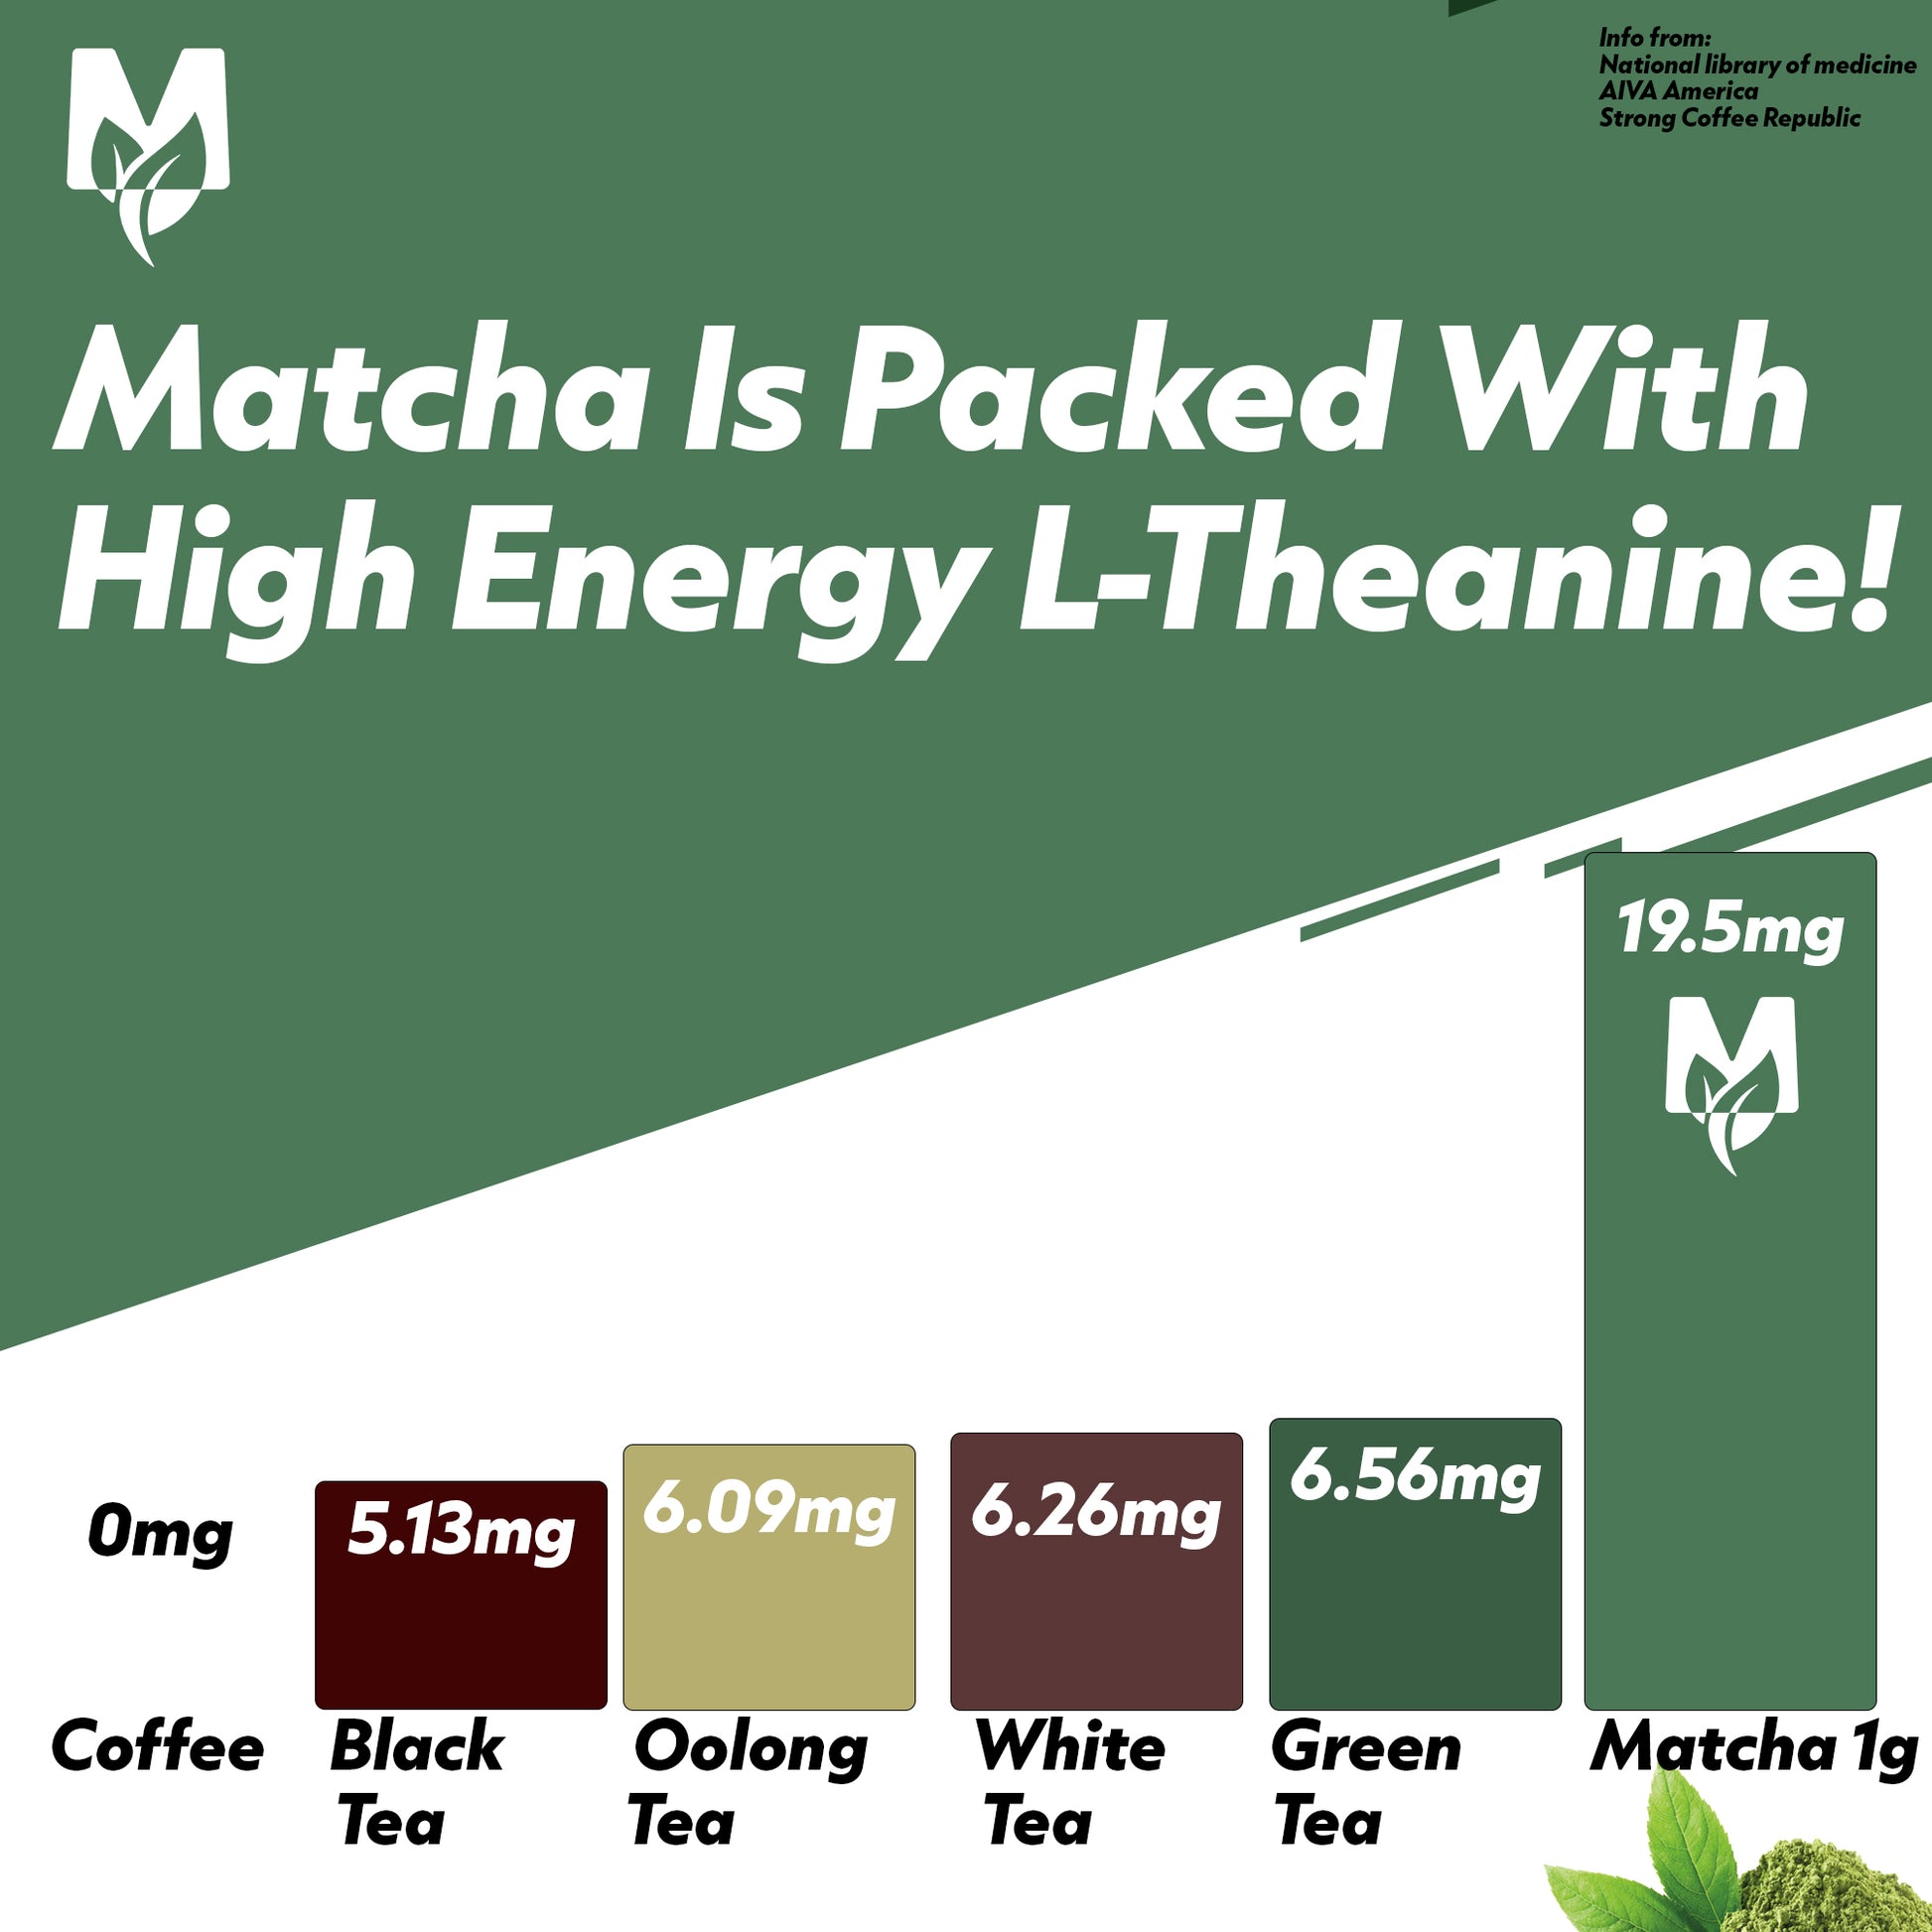 Matcha Ltheanine levels